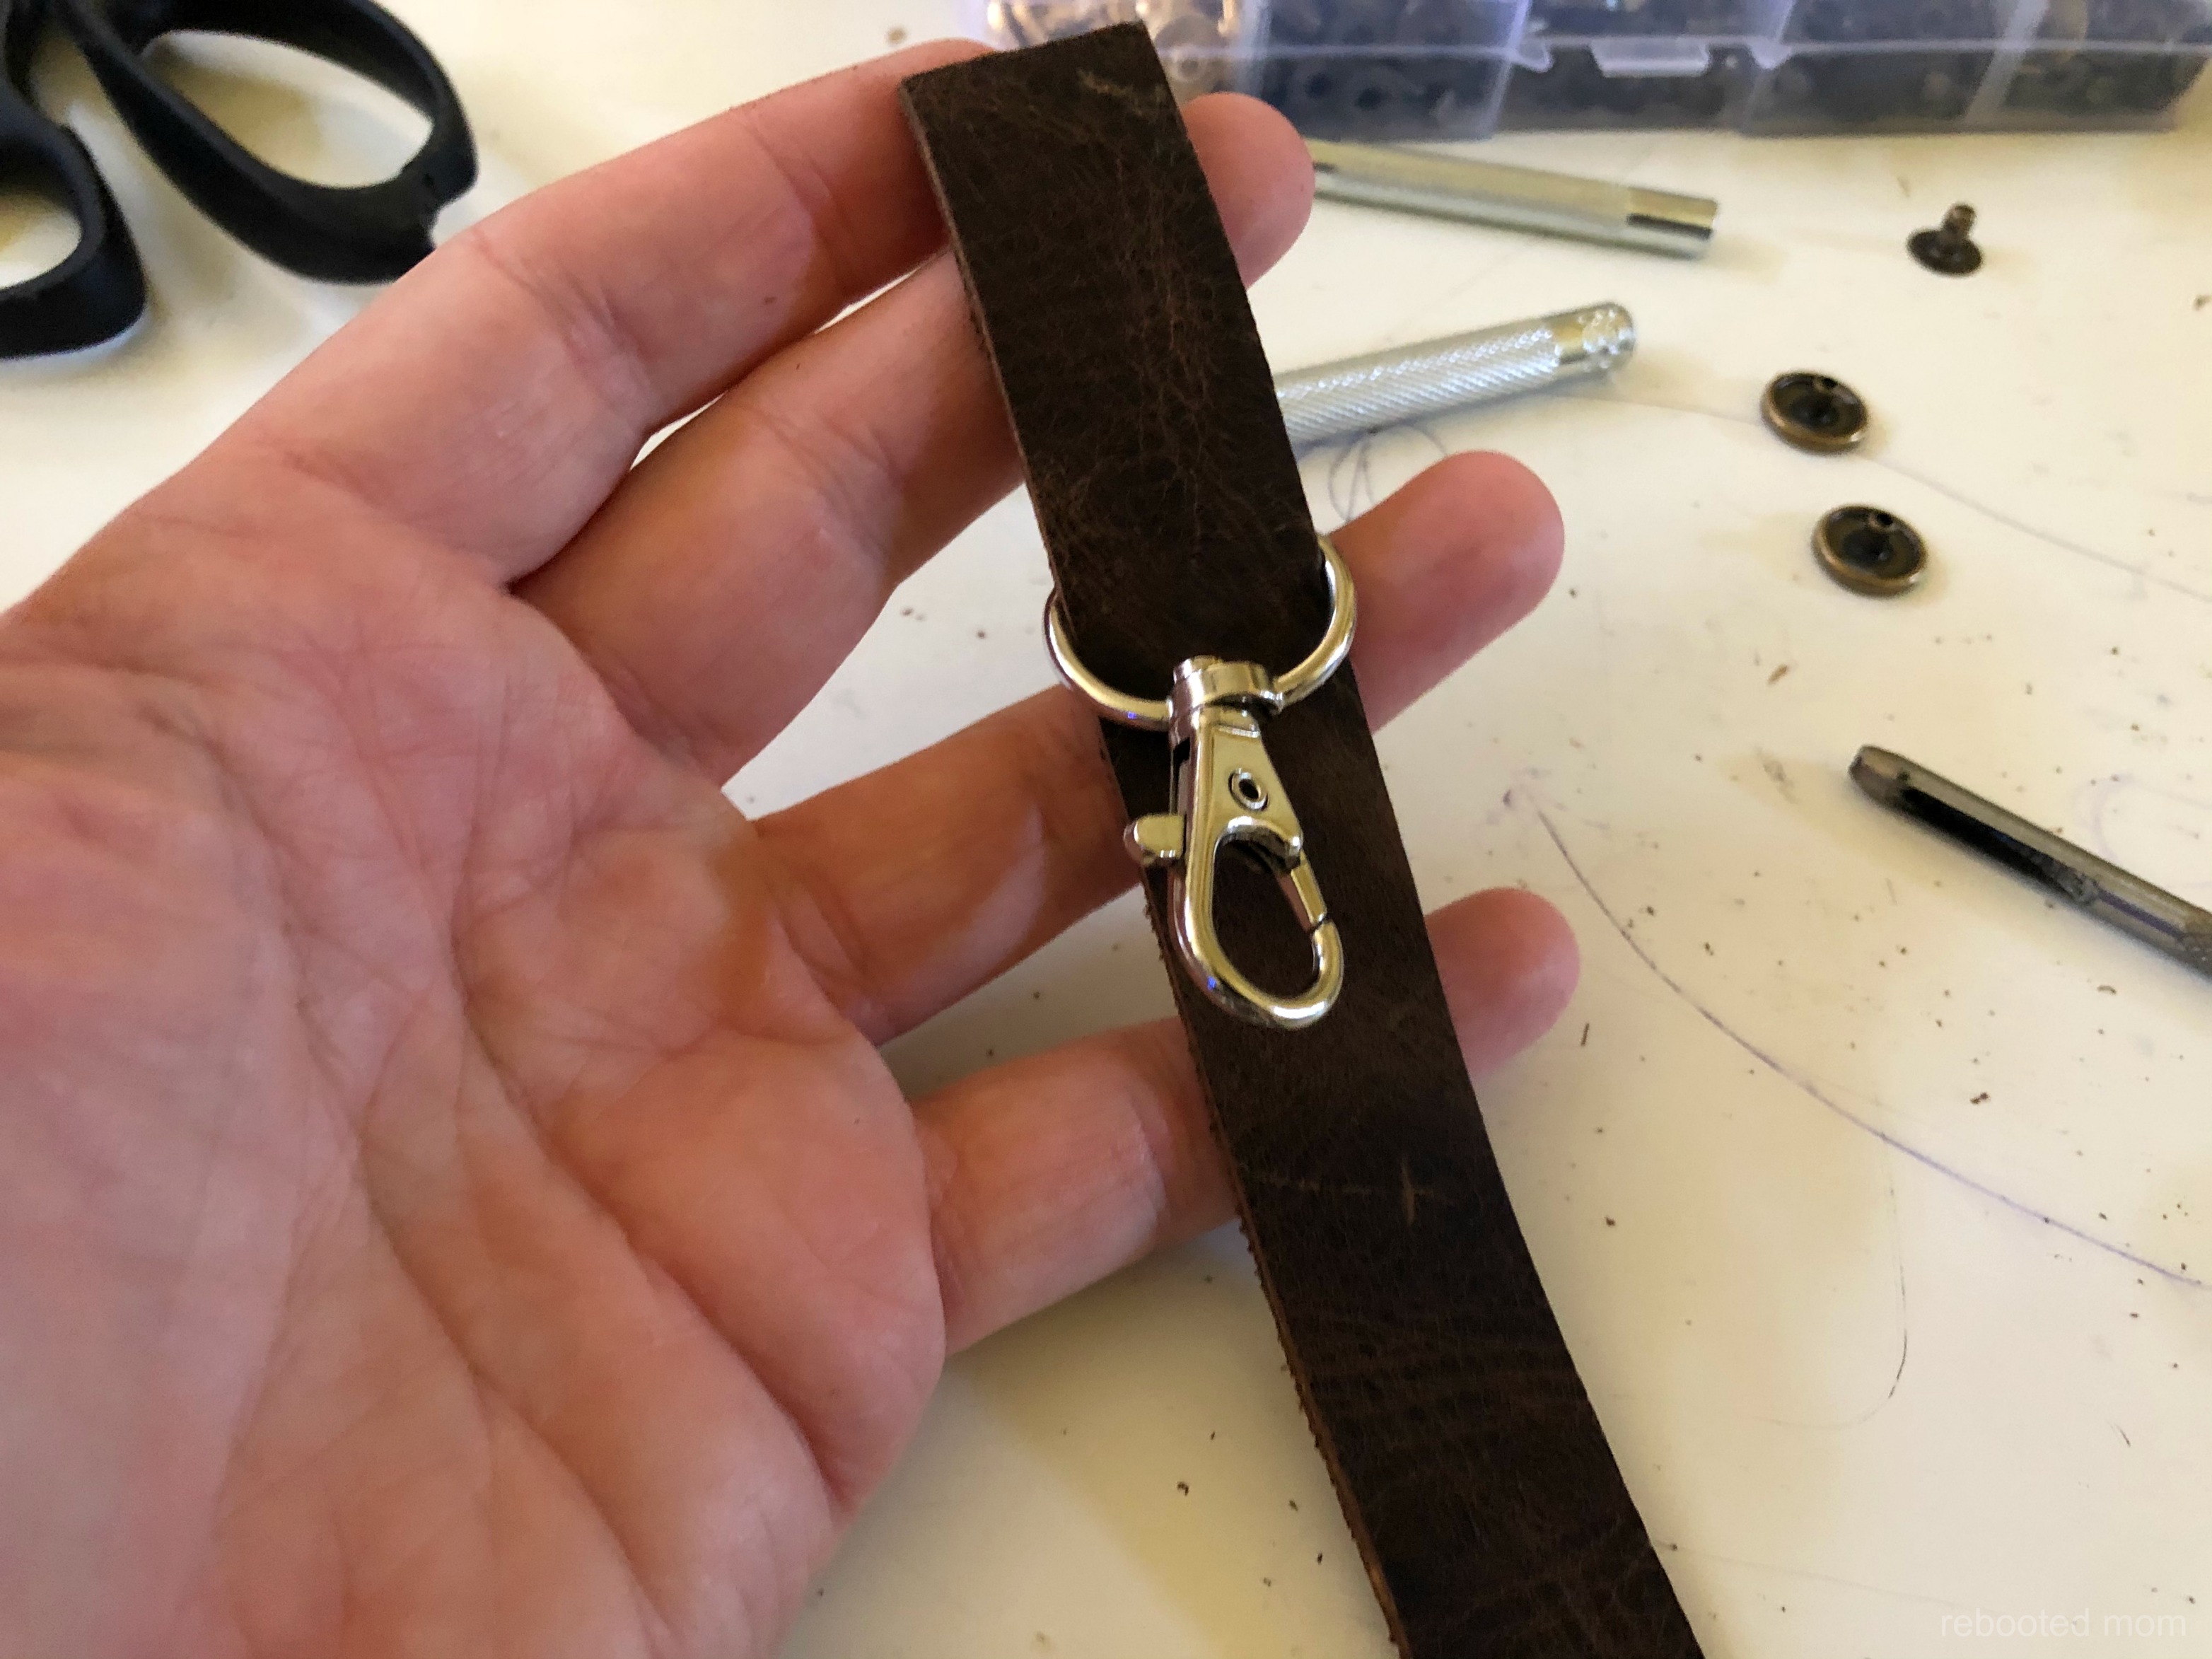 Leather Key Chain DIY